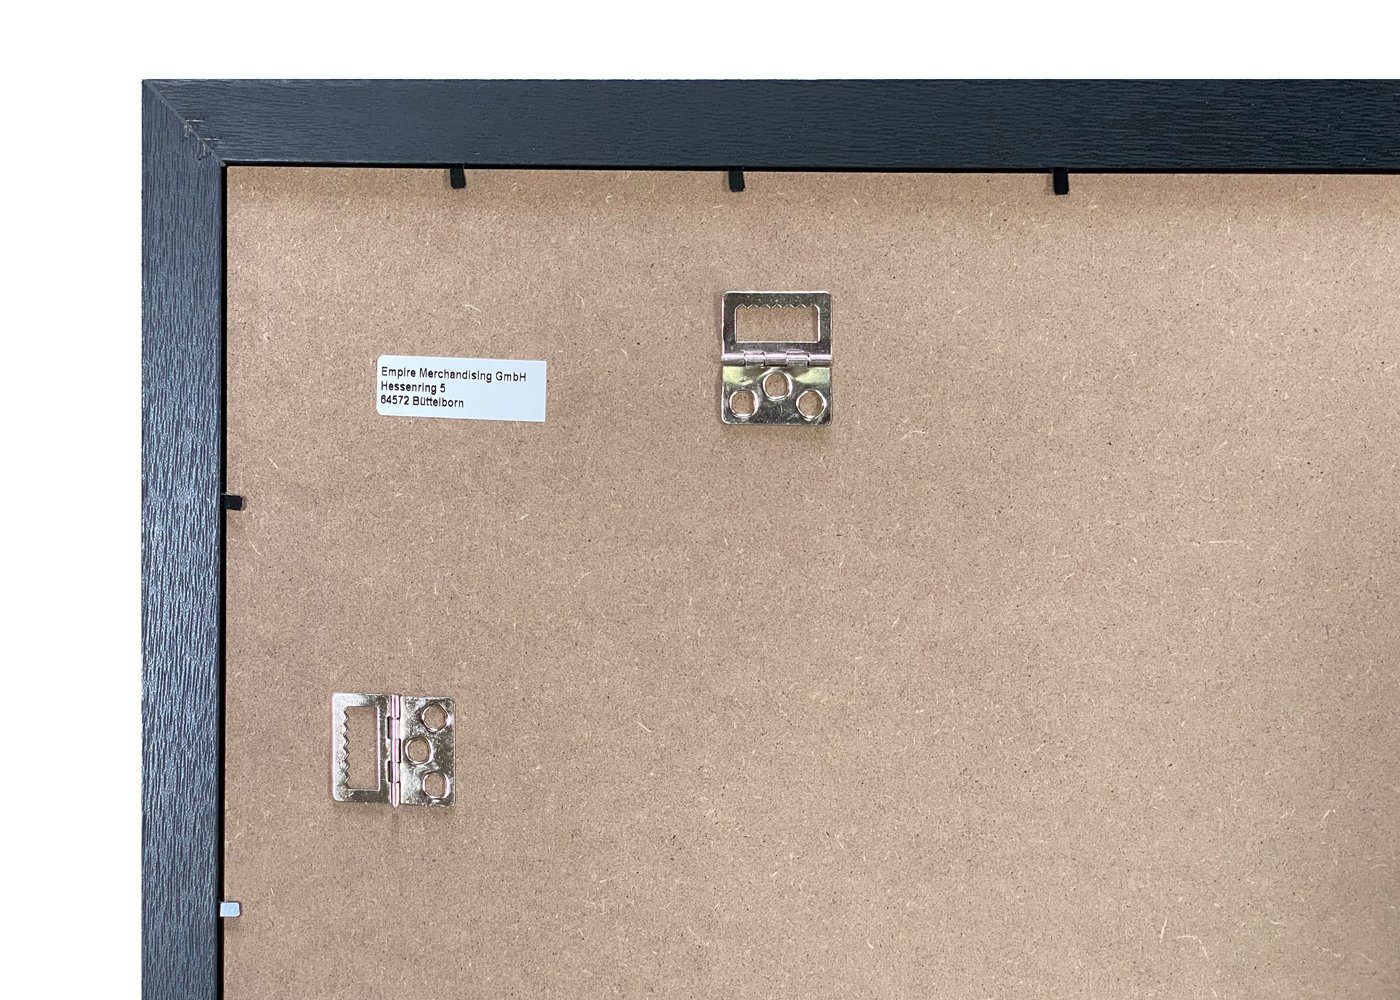 MDF cm, weiss Acryl-Scheibe empireposter Rahmen Maxi Farbe: Größe Wechselrahmen, 61x91,5 Shinsuke® mit